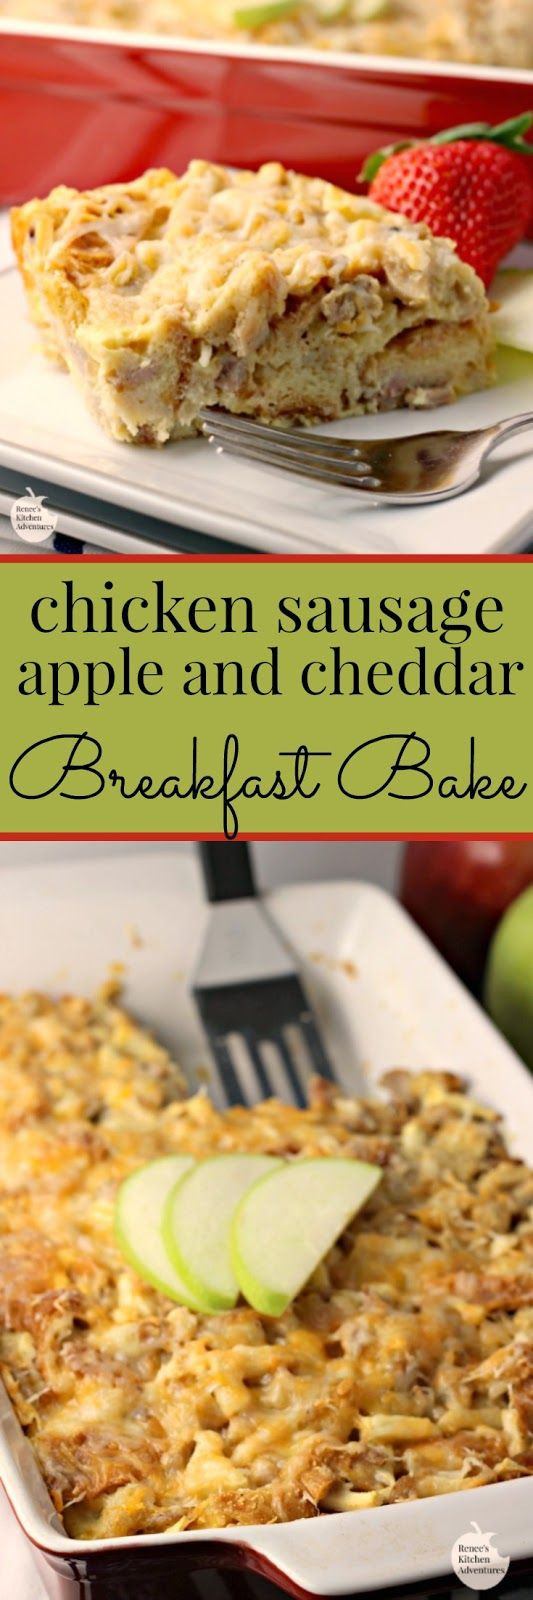 Chicken Breakfast Sausage Recipe
 Chicken Sausage Apple and Cheddar Breakfast Bake